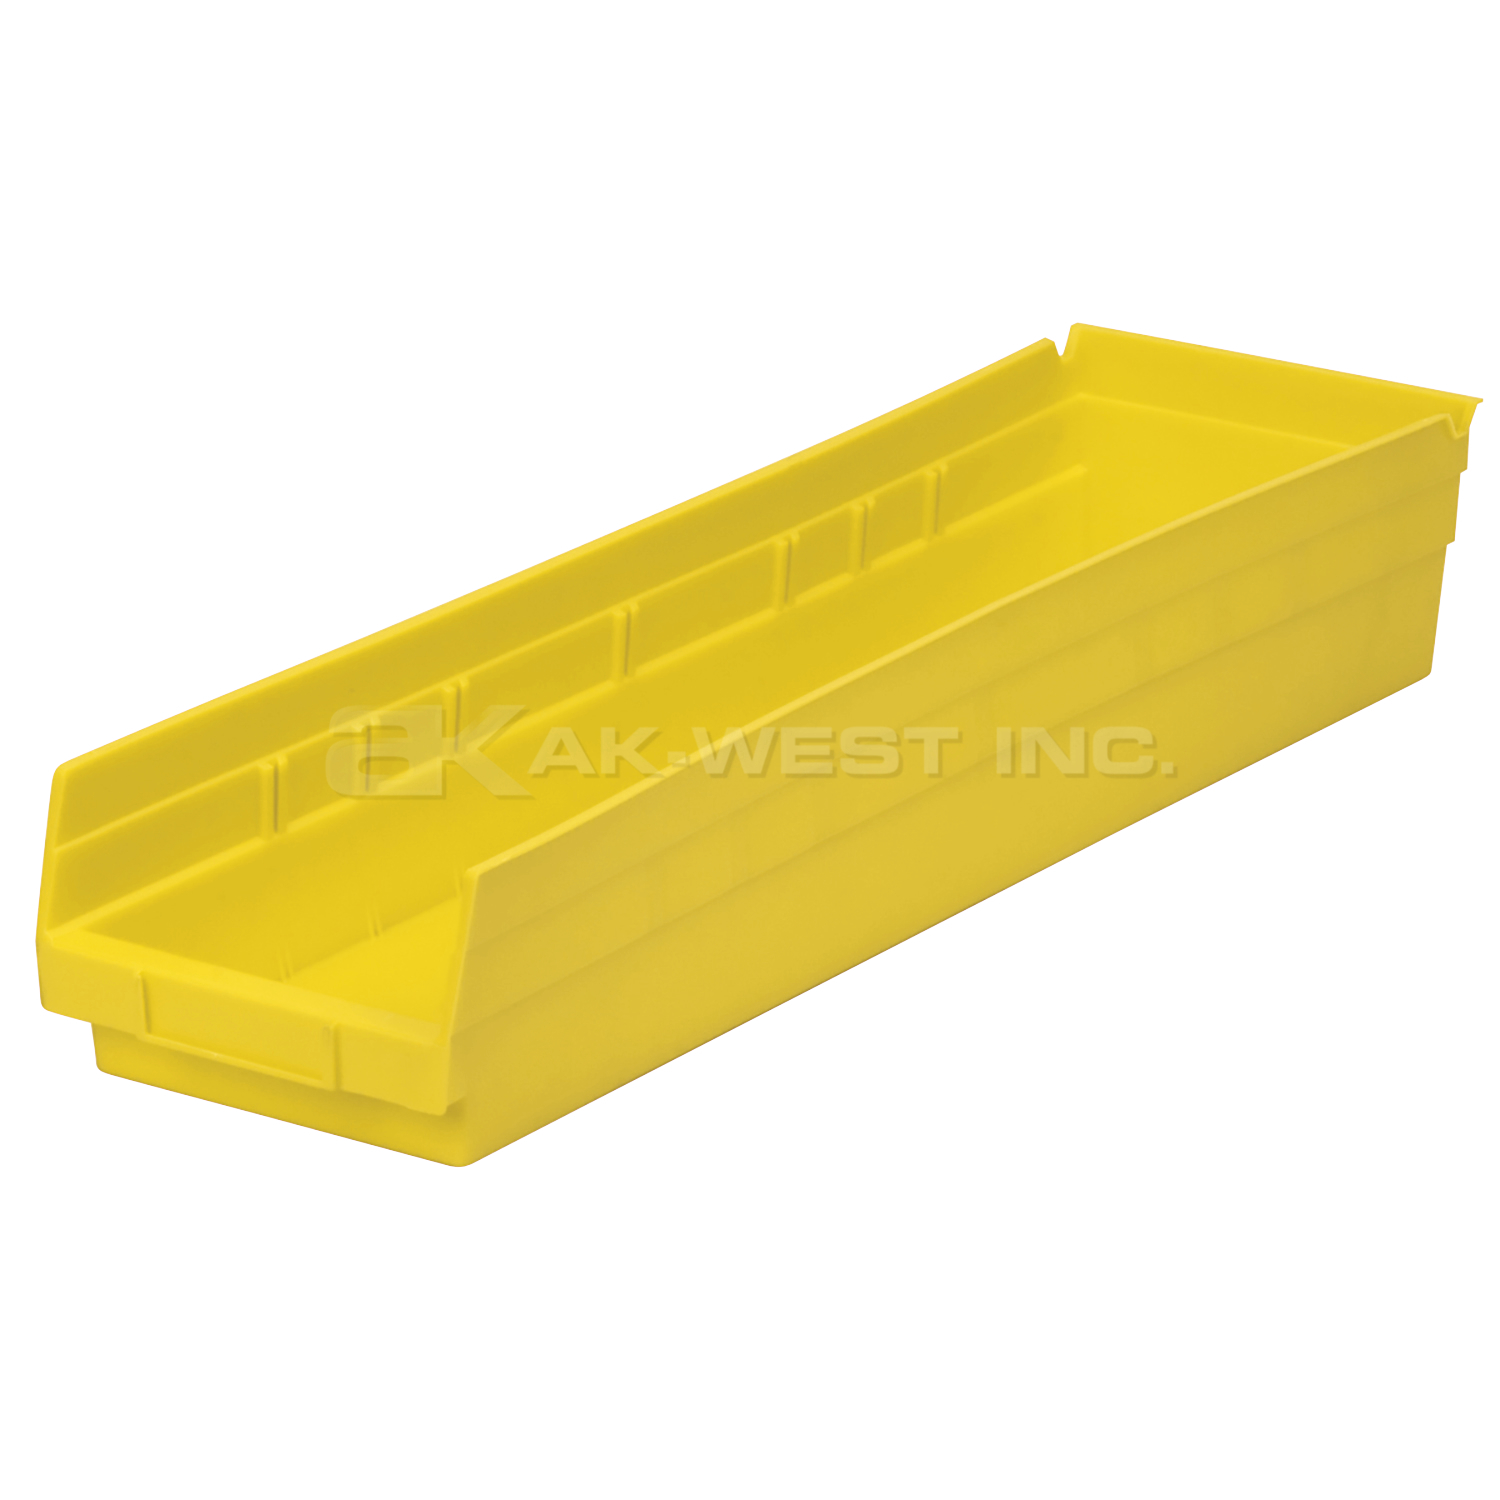 Yellow, 23-5/8" x 6-5/8" x 4" Shelf Bin (6 Per Carton)